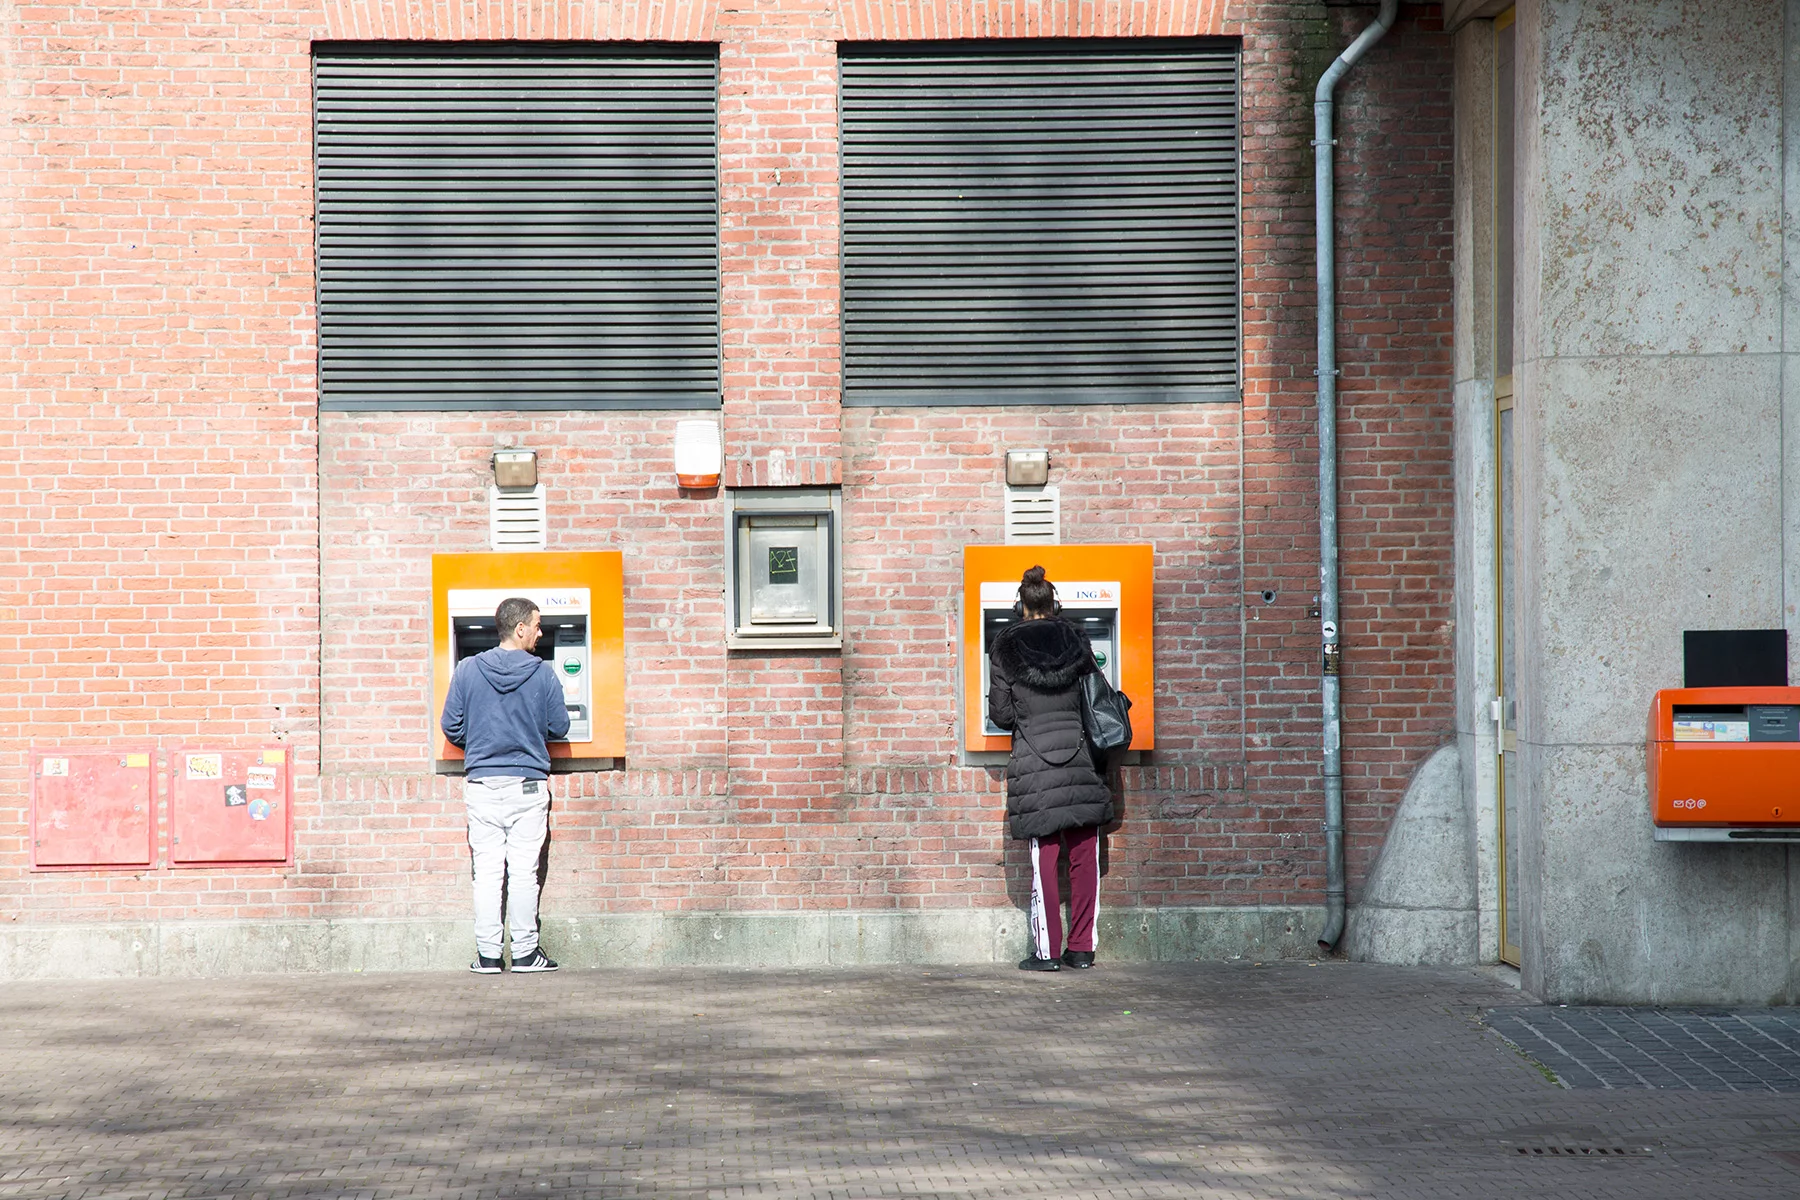 Geldmaat: Bank ATM machine in the Netherlands